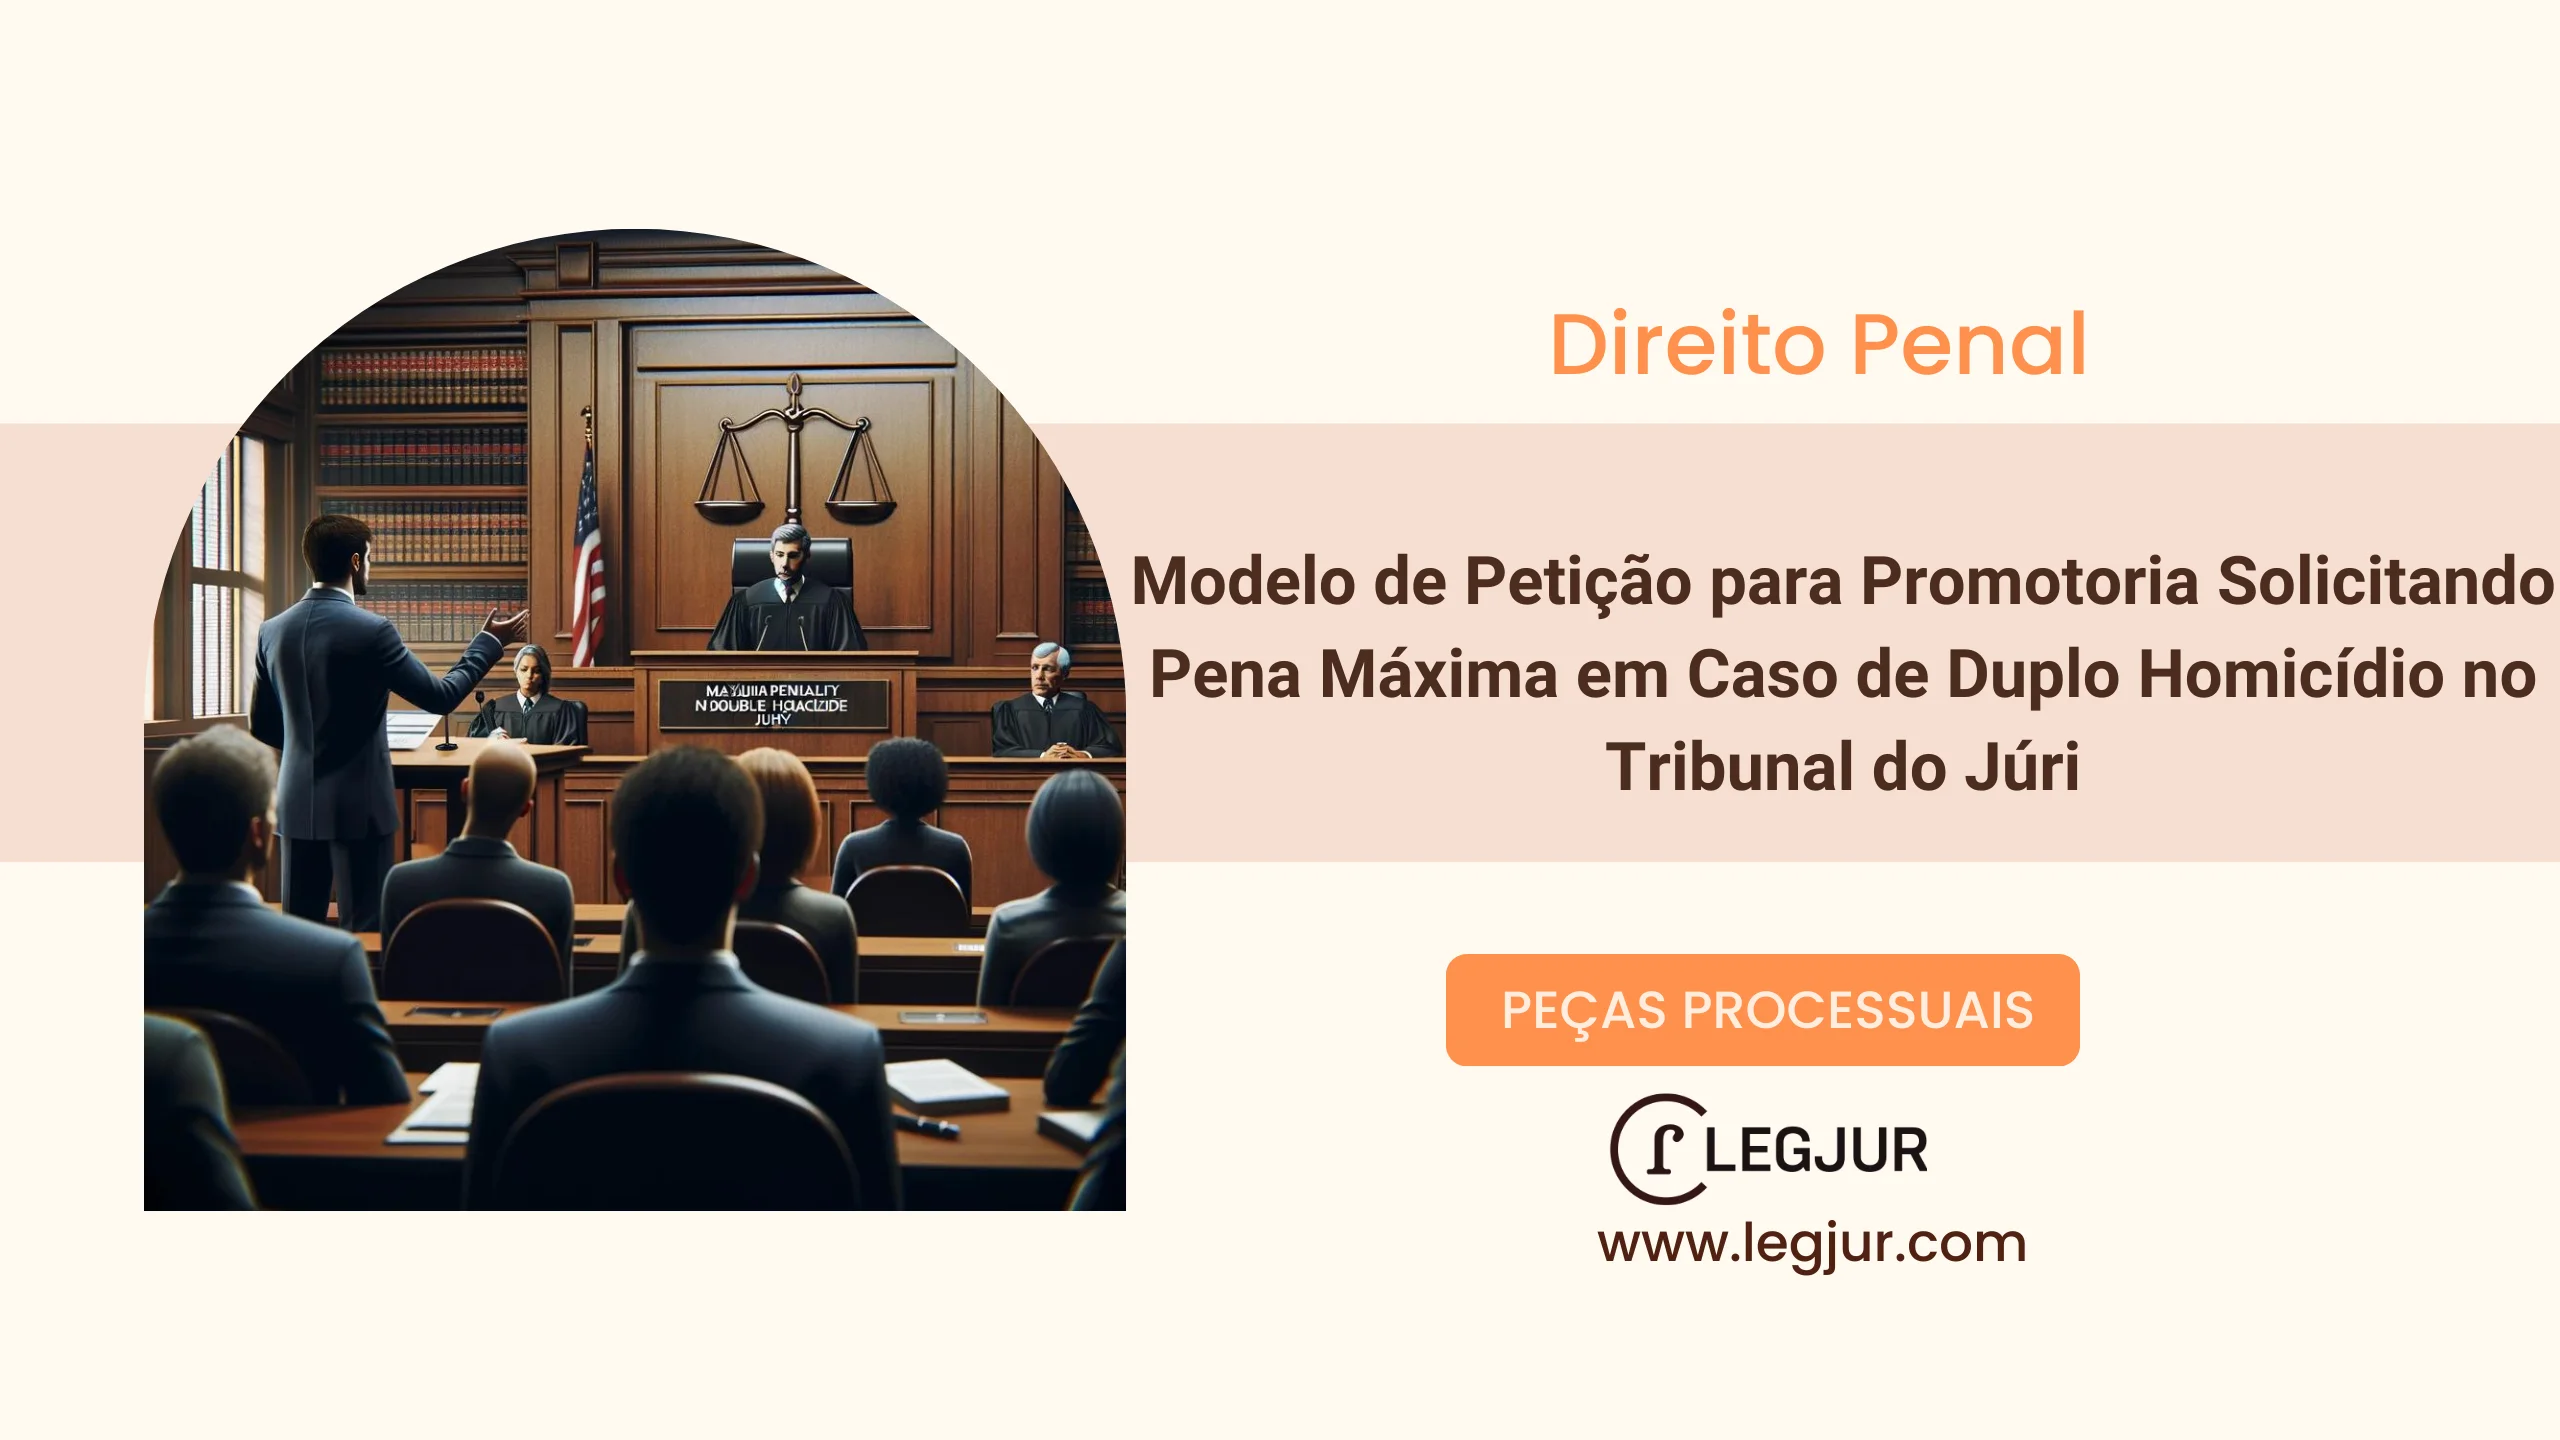 Modelo de Petição para Promotoria Solicitando Pena Máxima em Caso de Duplo Homicídio no Tribunal do Júri